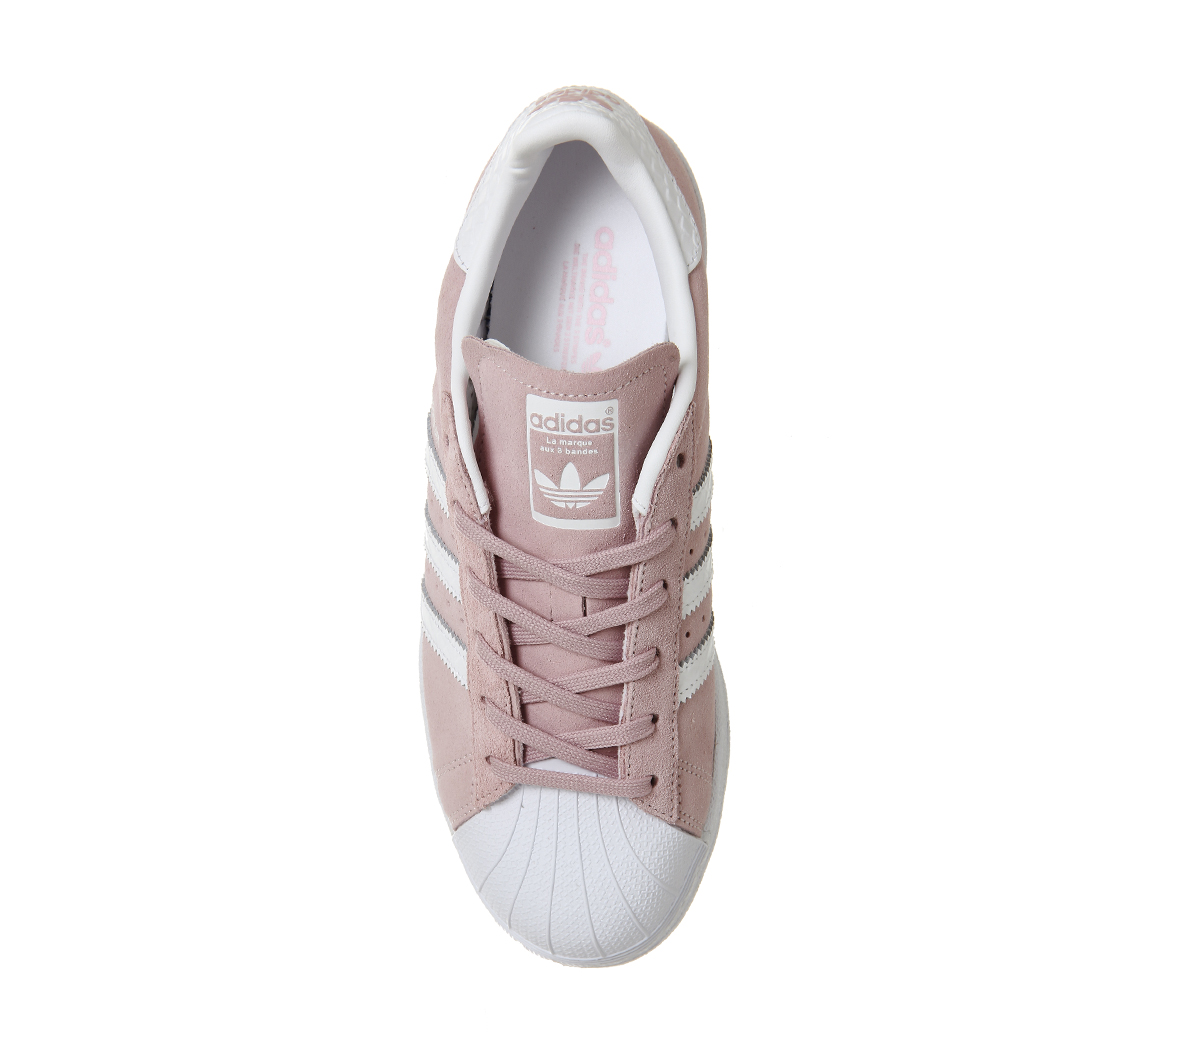 adidas superstar pink white snake